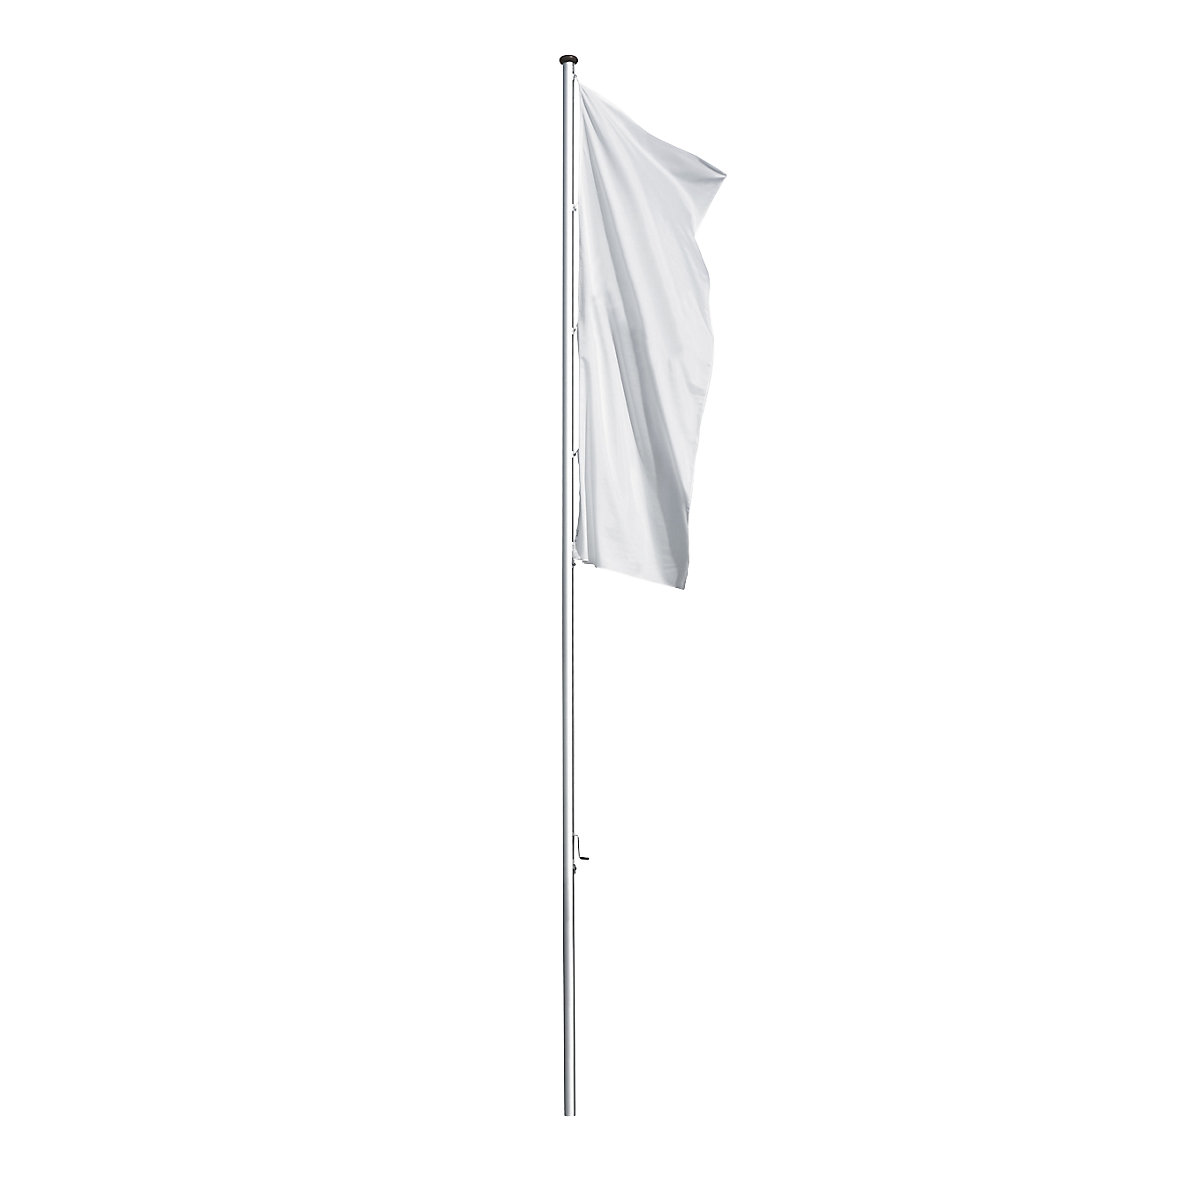 PRESTIGE aluminium flag pole - Mannus